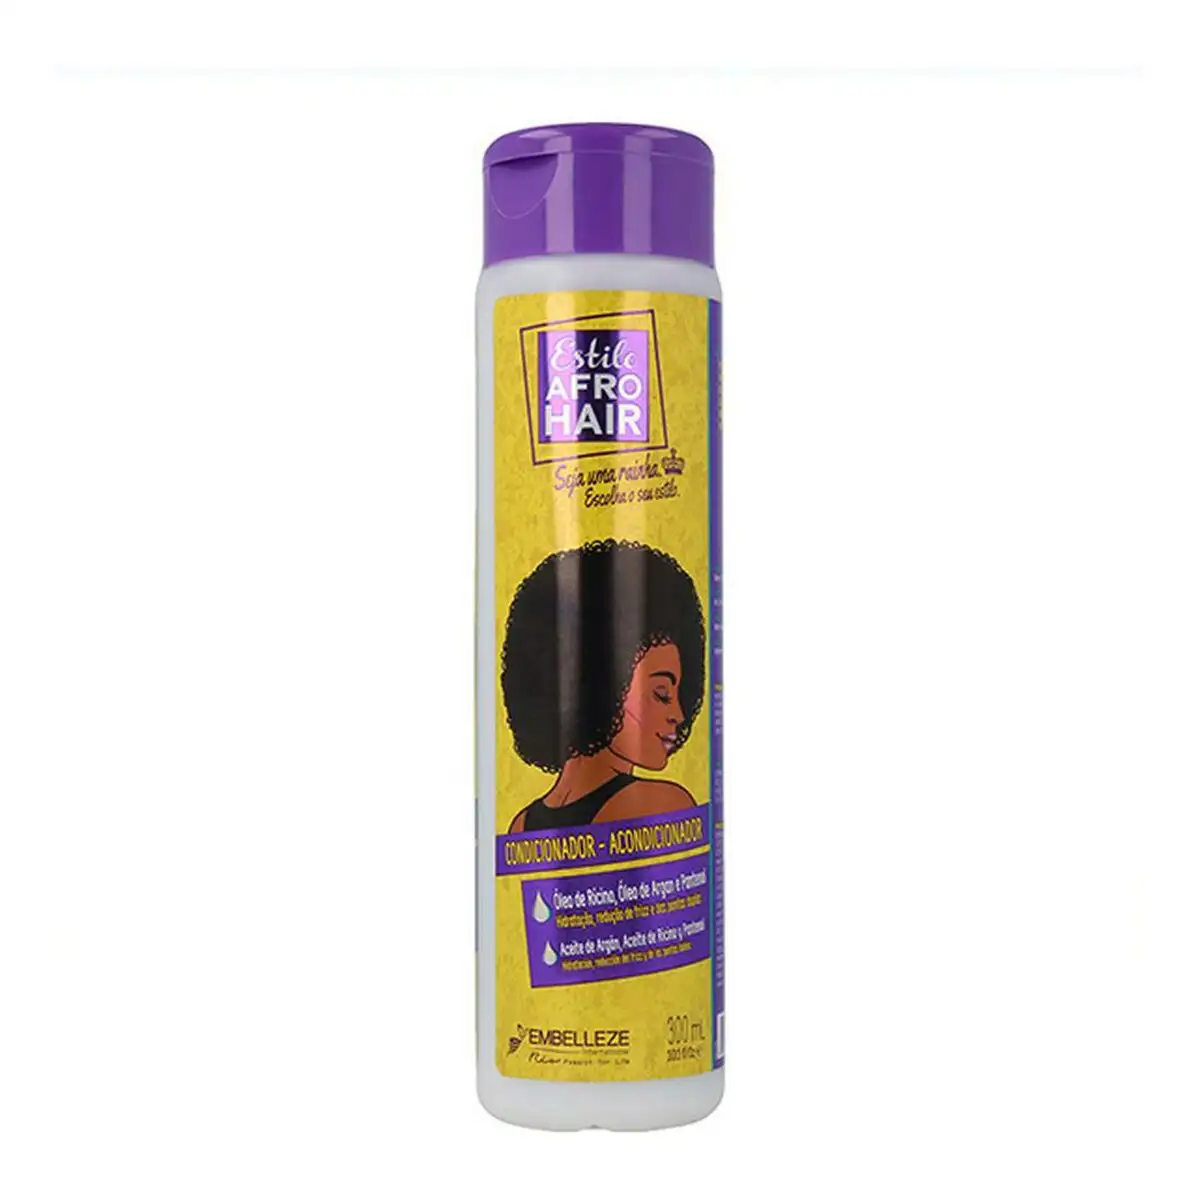 Apres shampooing afro hair novex 6900 300 ml _6473. DIAYTAR SENEGAL - Où Chaque Produit a sa Place. Parcourez notre catalogue et choisissez des articles qui s'intègrent parfaitement à votre style et à votre espace.